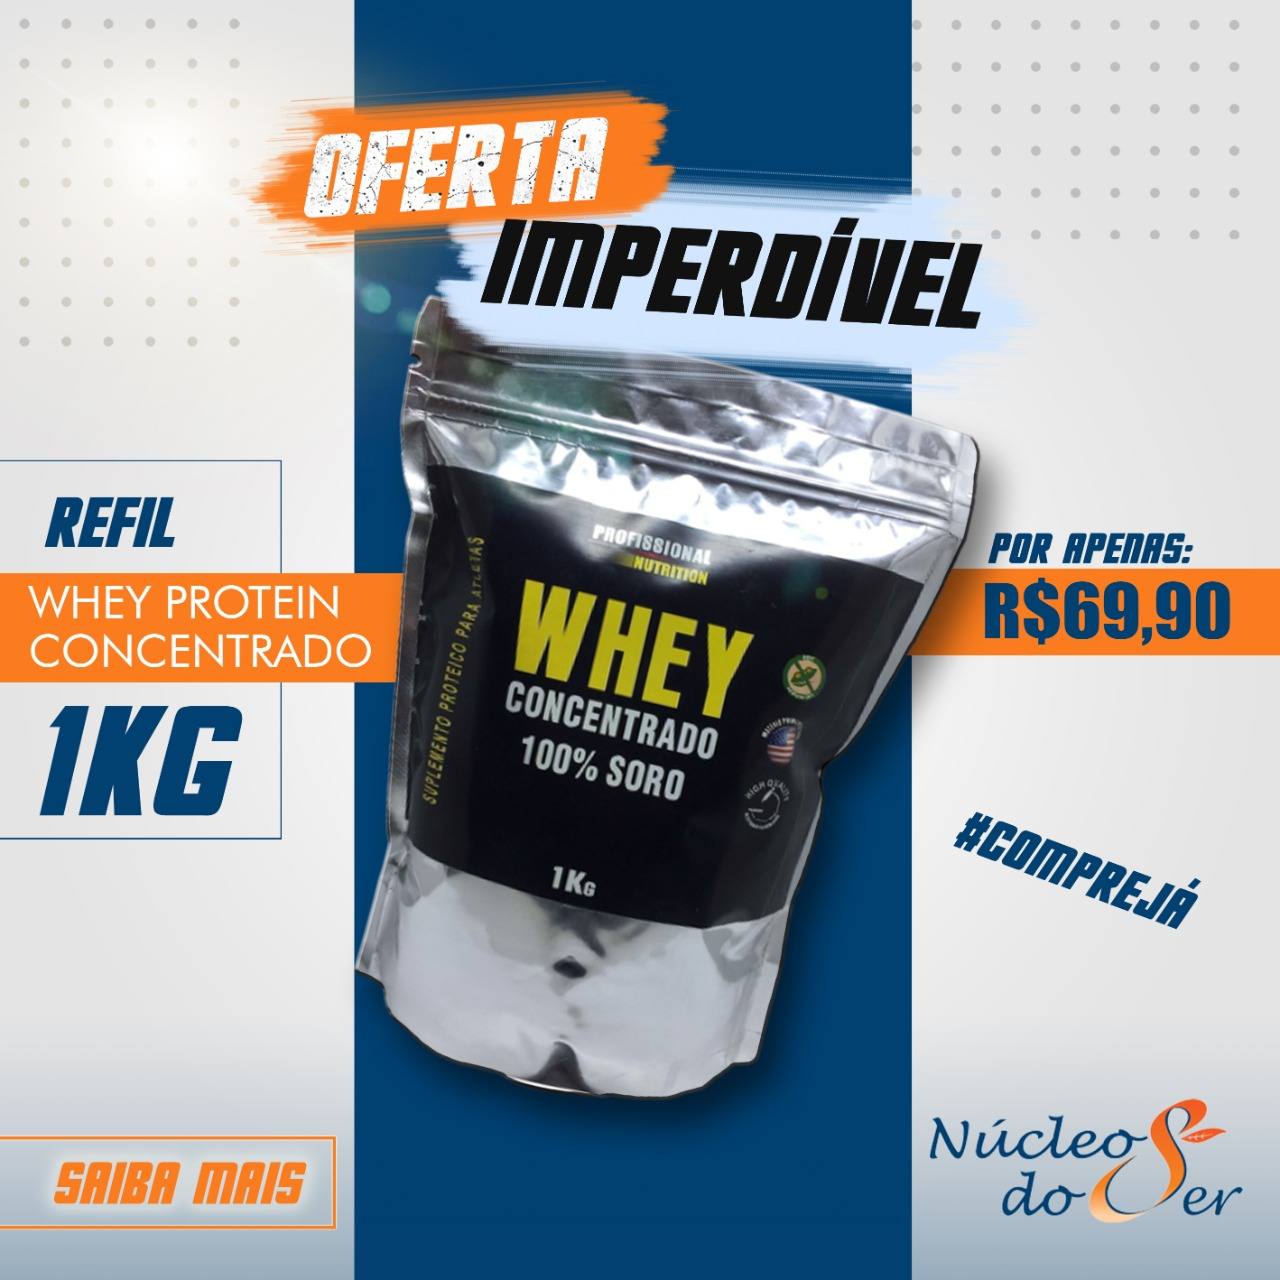 PROMOÇÃO Whey Protein Concentrado - Refil 1kg<br>Suplementos e Nutrição - R$ 83,89